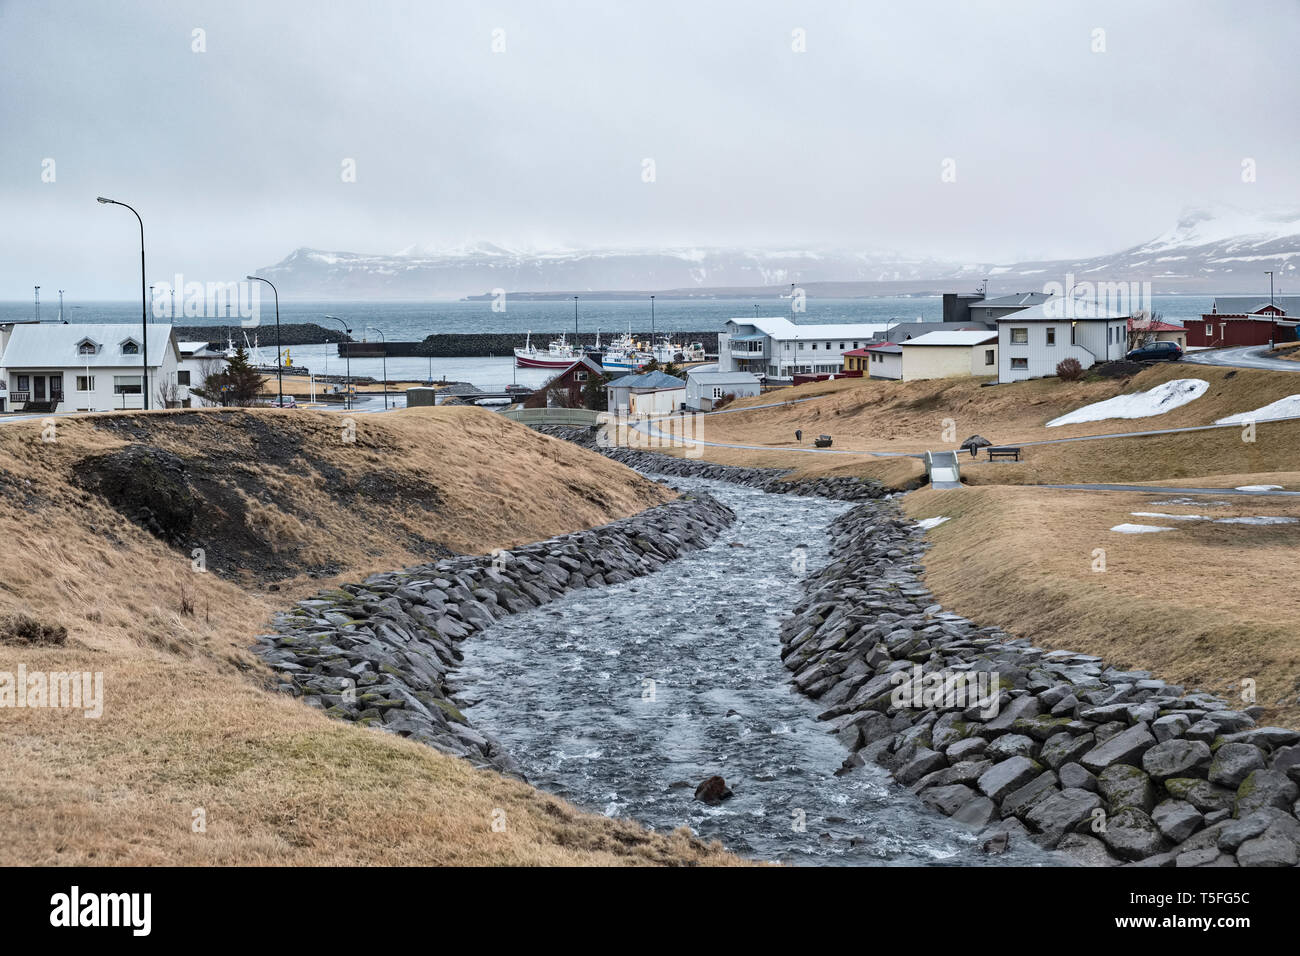 Ólafsvík, West Islanda - un piccolo porto di pesca vicino alla punta della penisola di Snaefellsnes. Foto Stock